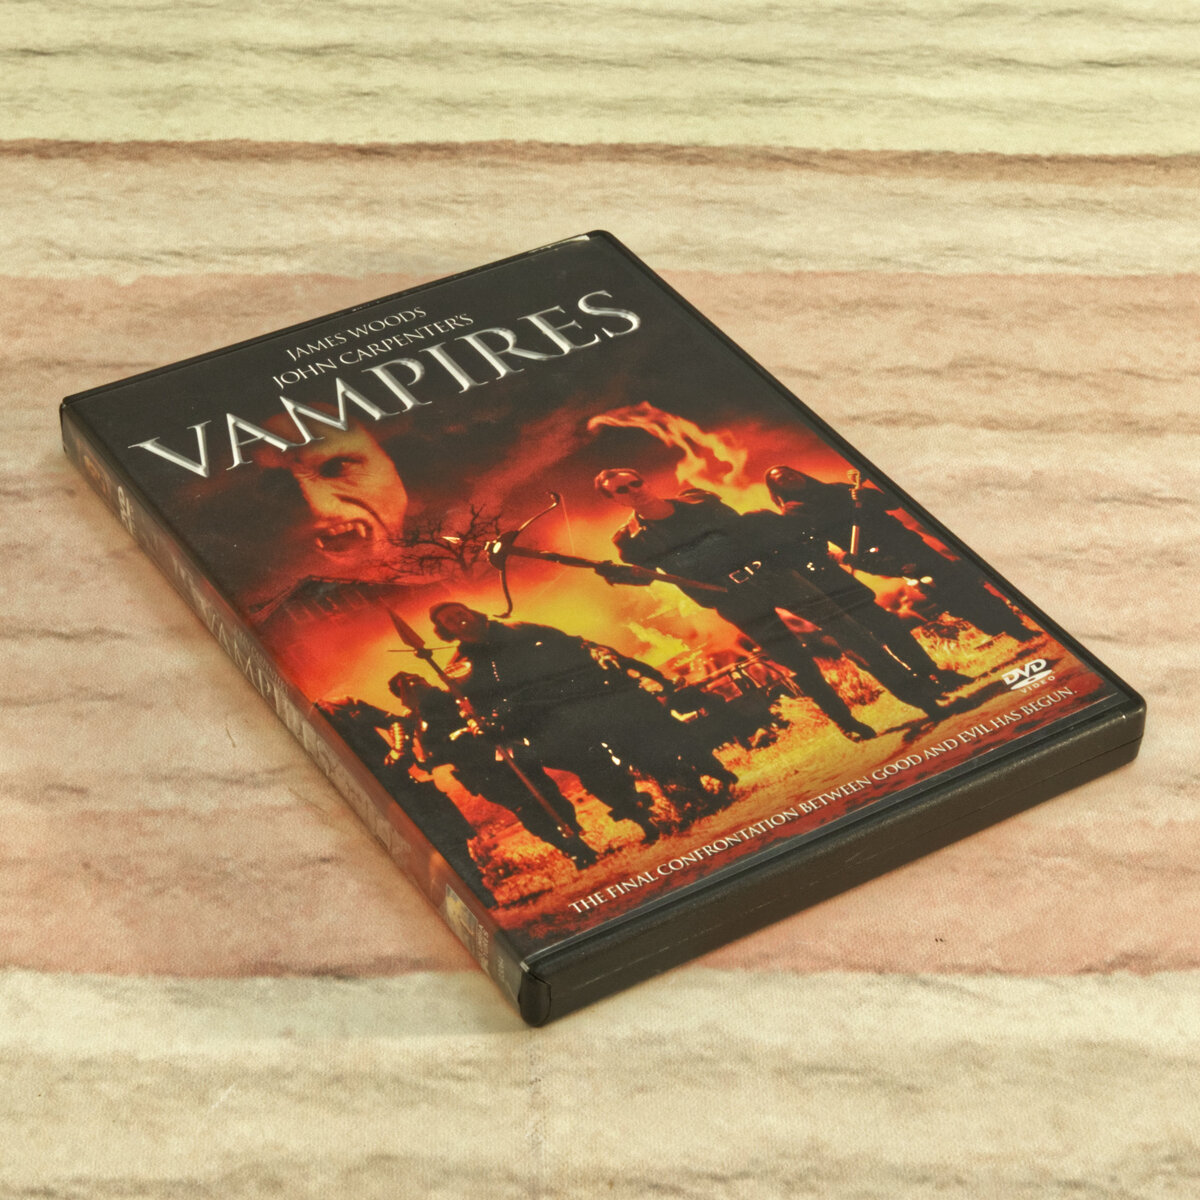 John Carpenter's Vampires Movie DVD